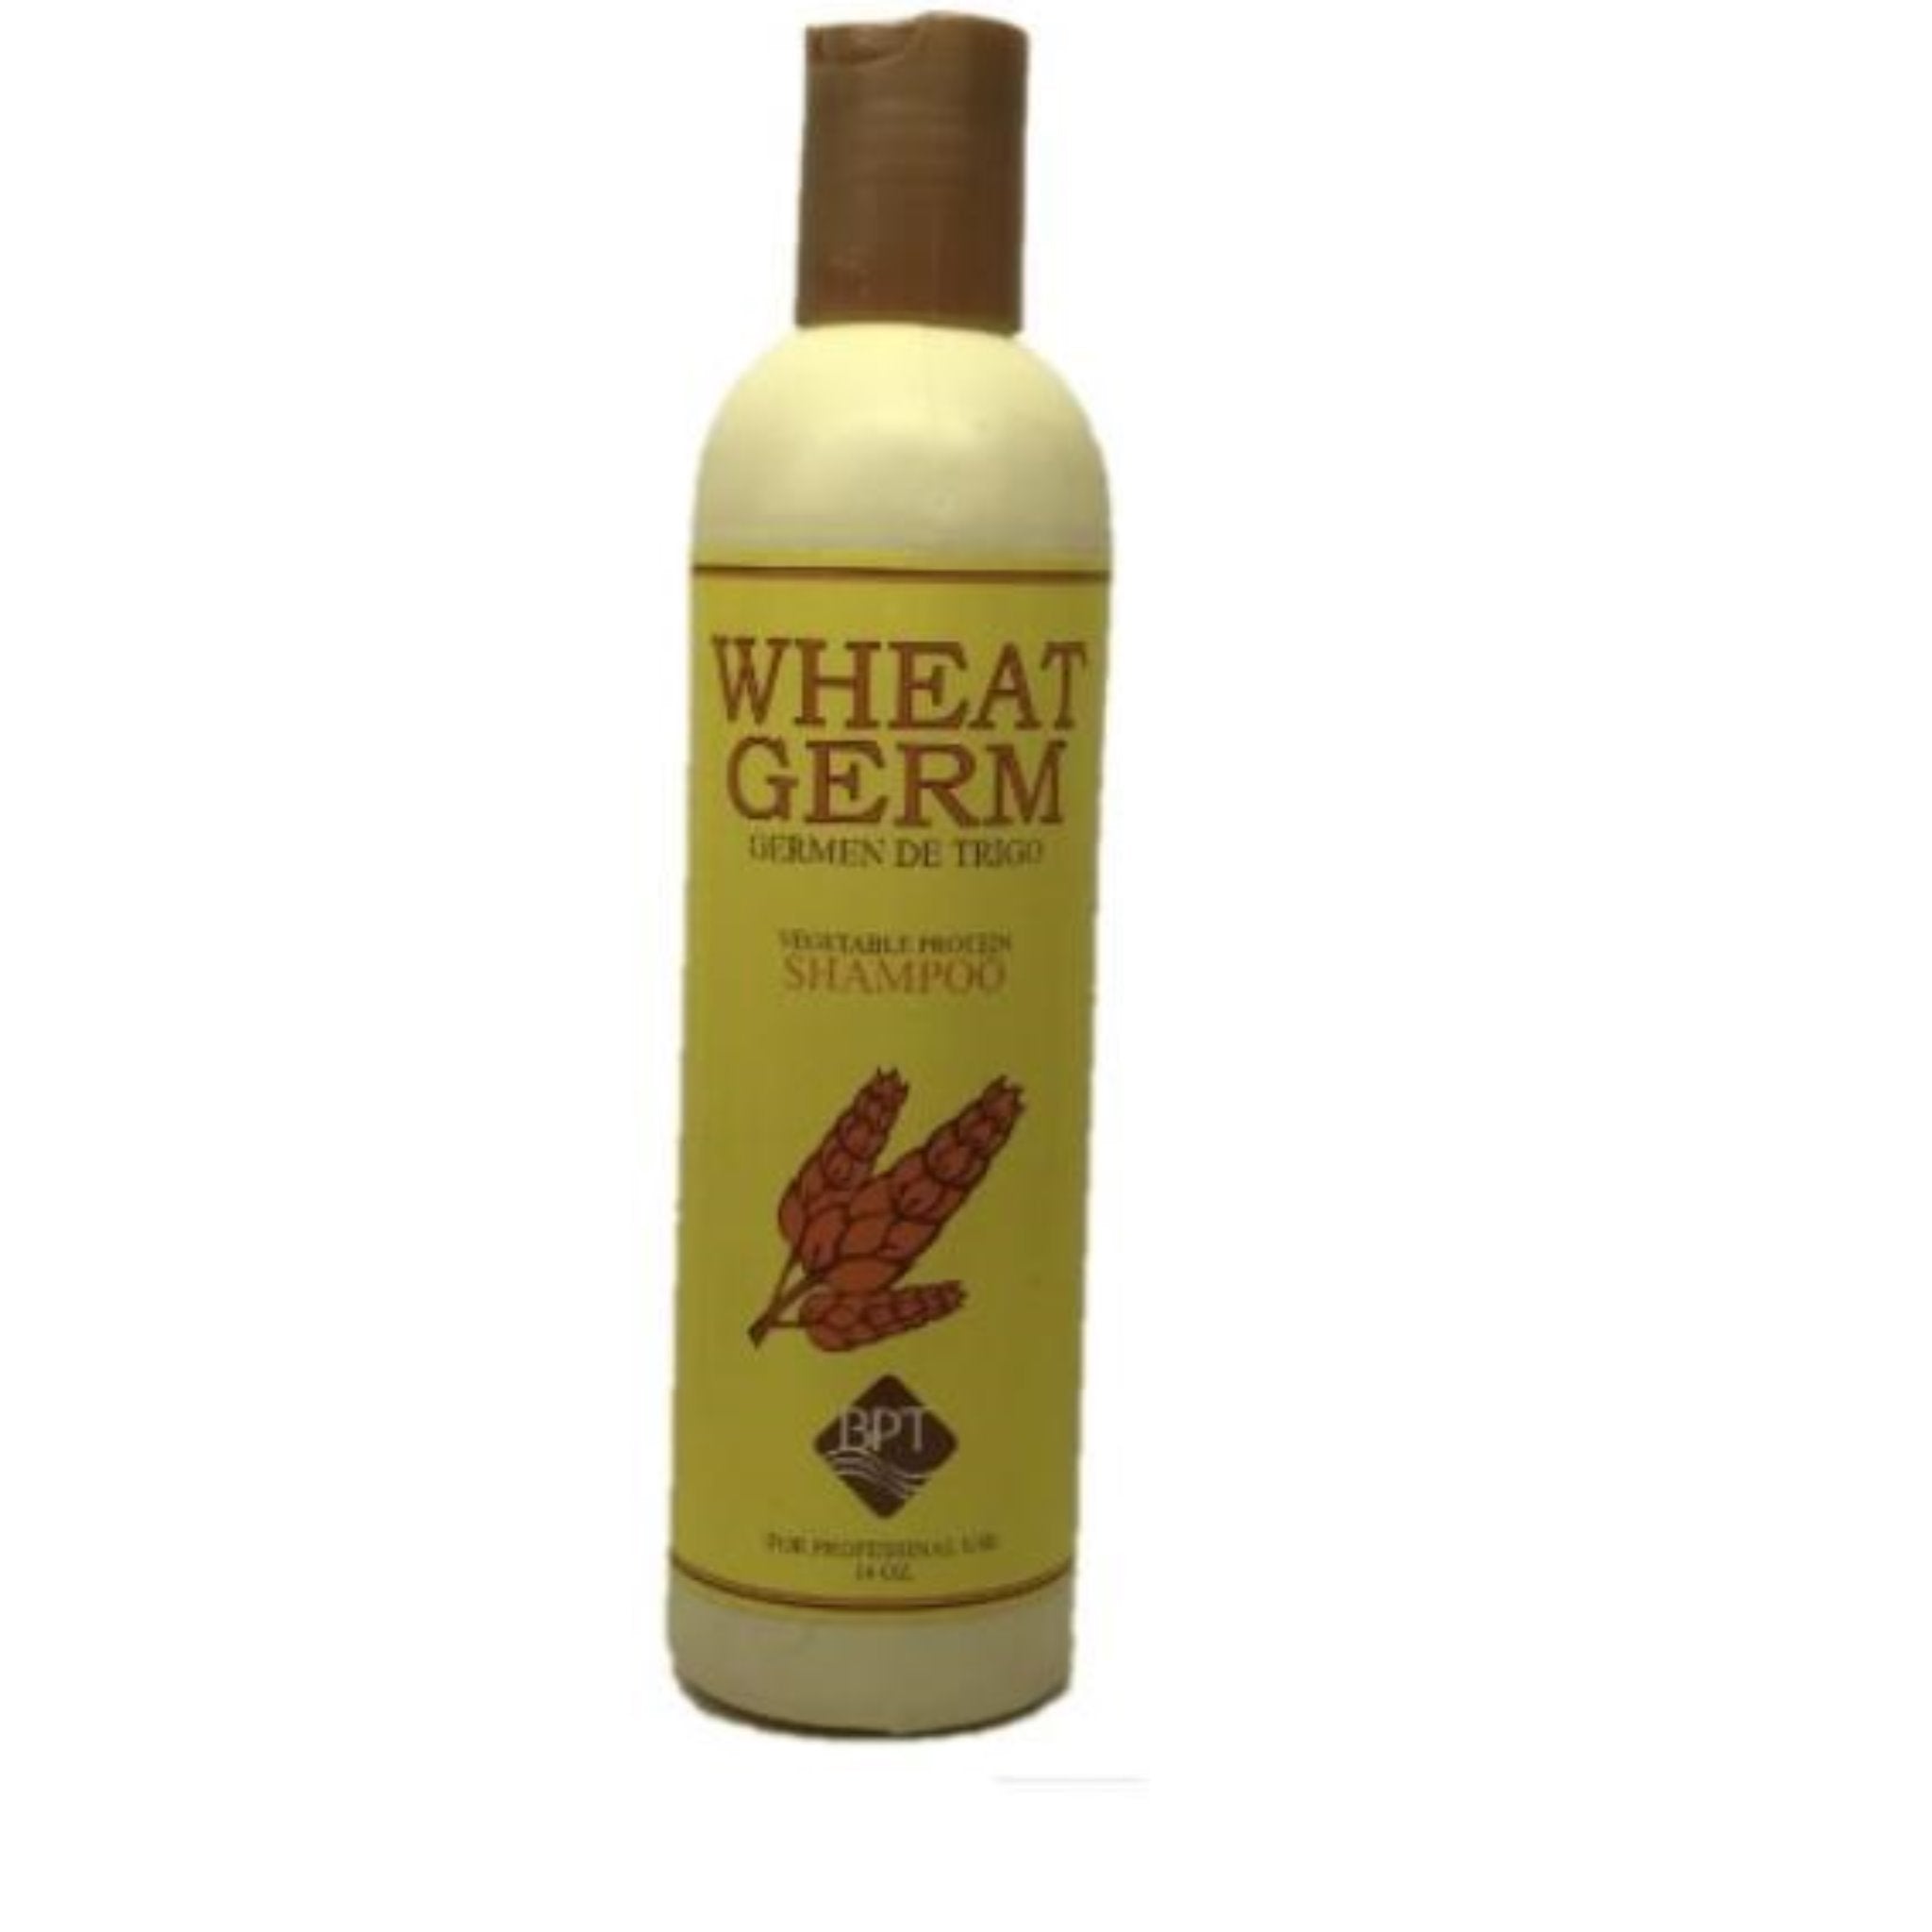 Lafier BPT Wheat Germ Shampoo 14 oz